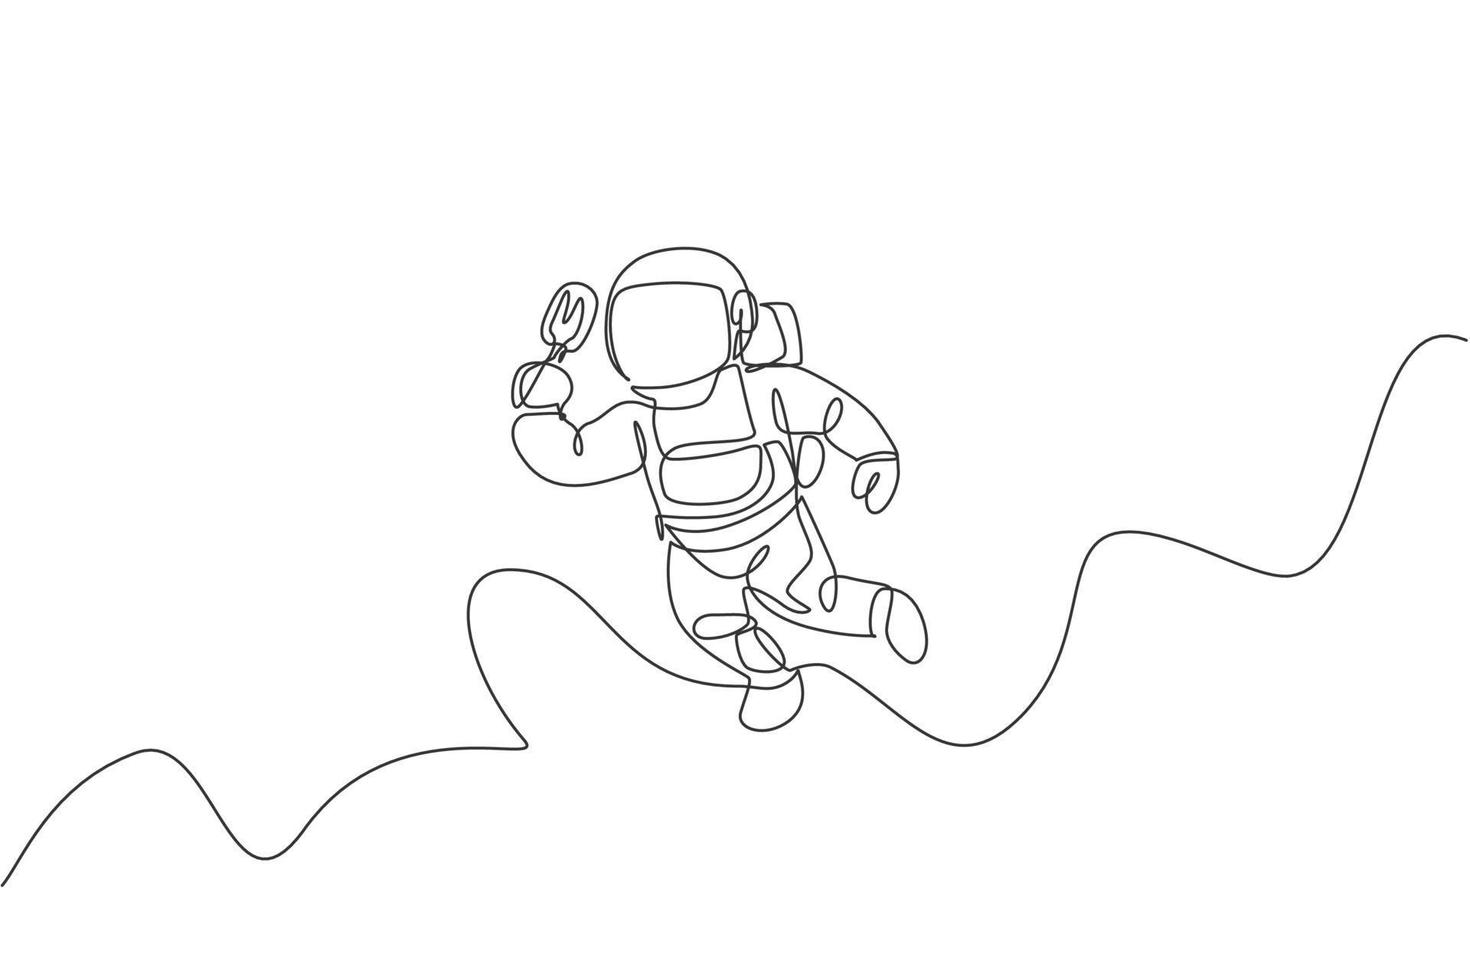 desenho de linha única contínua de astronauta voando relaxa enquanto come sorvete de picolé na galáxia nebulosa. ficção de fantasia do conceito de vida do espaço sideral. ilustração em vetor desenho desenho de uma linha na moda